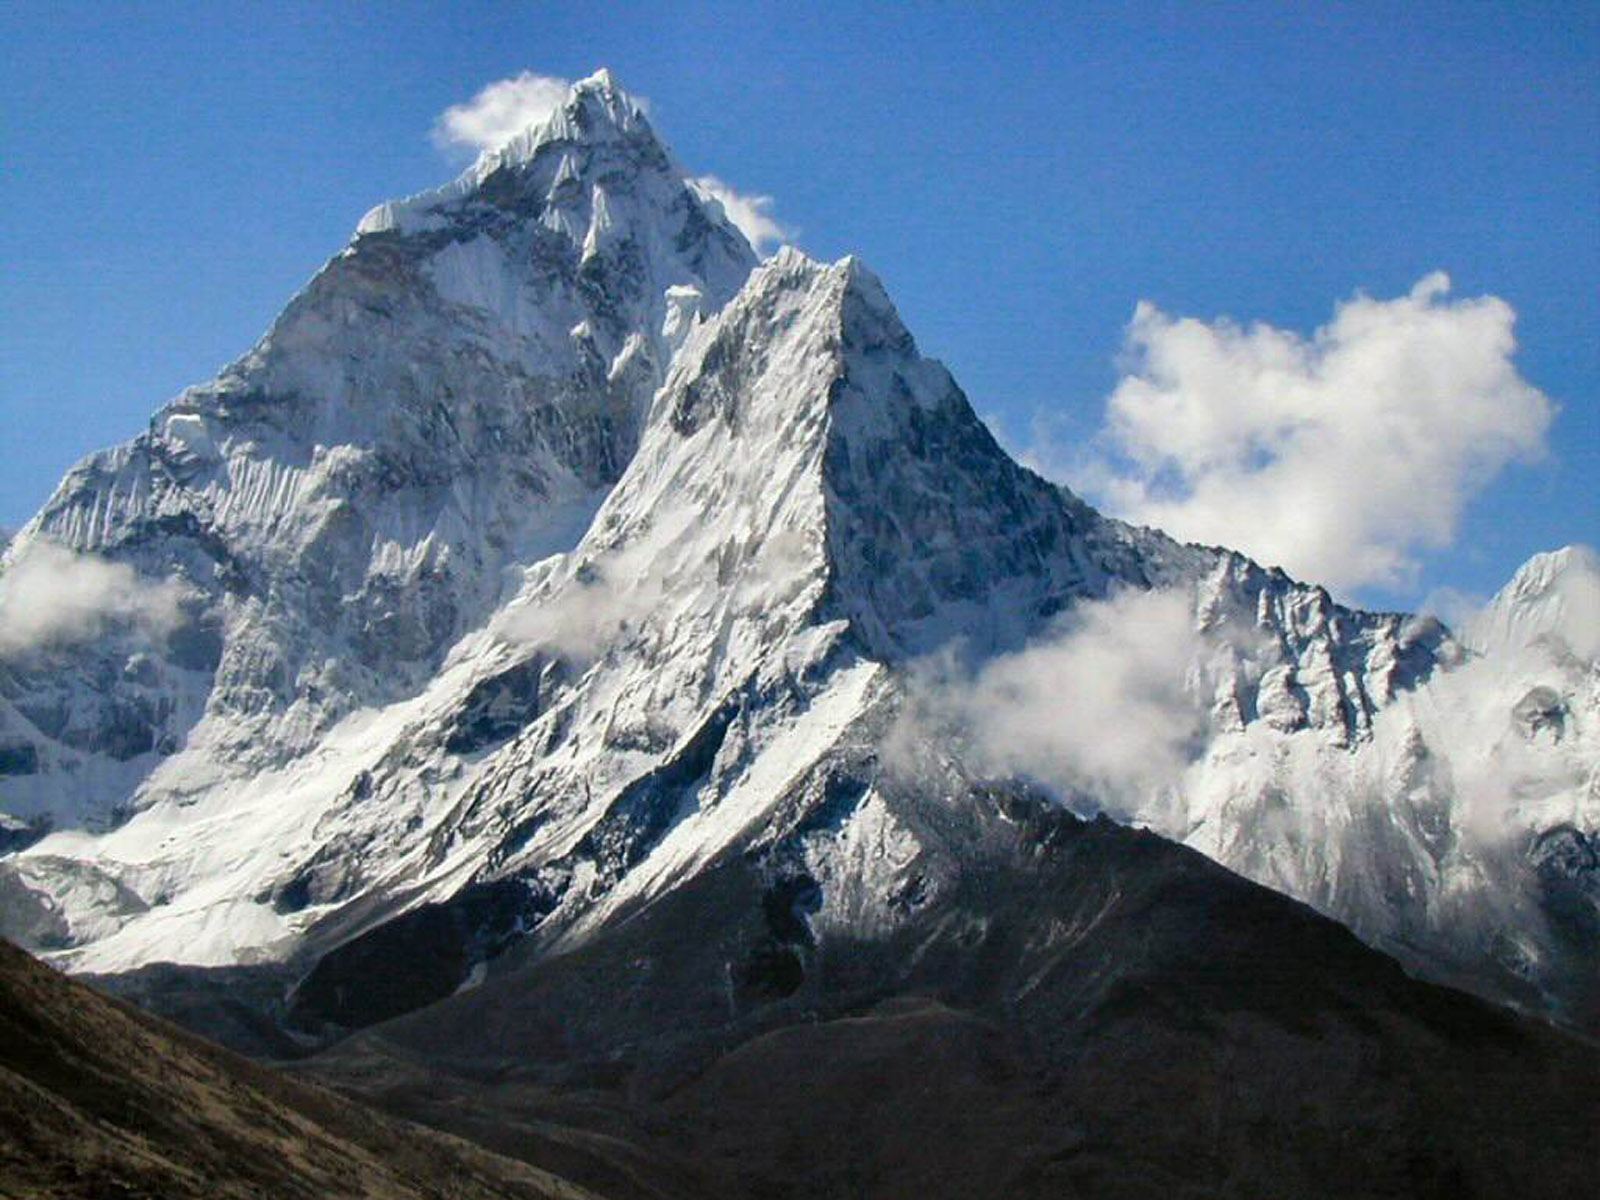 Гималаи море. Гималаи Эверест Джомолунгма. Гора Эверест (Джомолунгма). Гималаи. Гора Эверест 8848 метров. Эверест джамалумба.